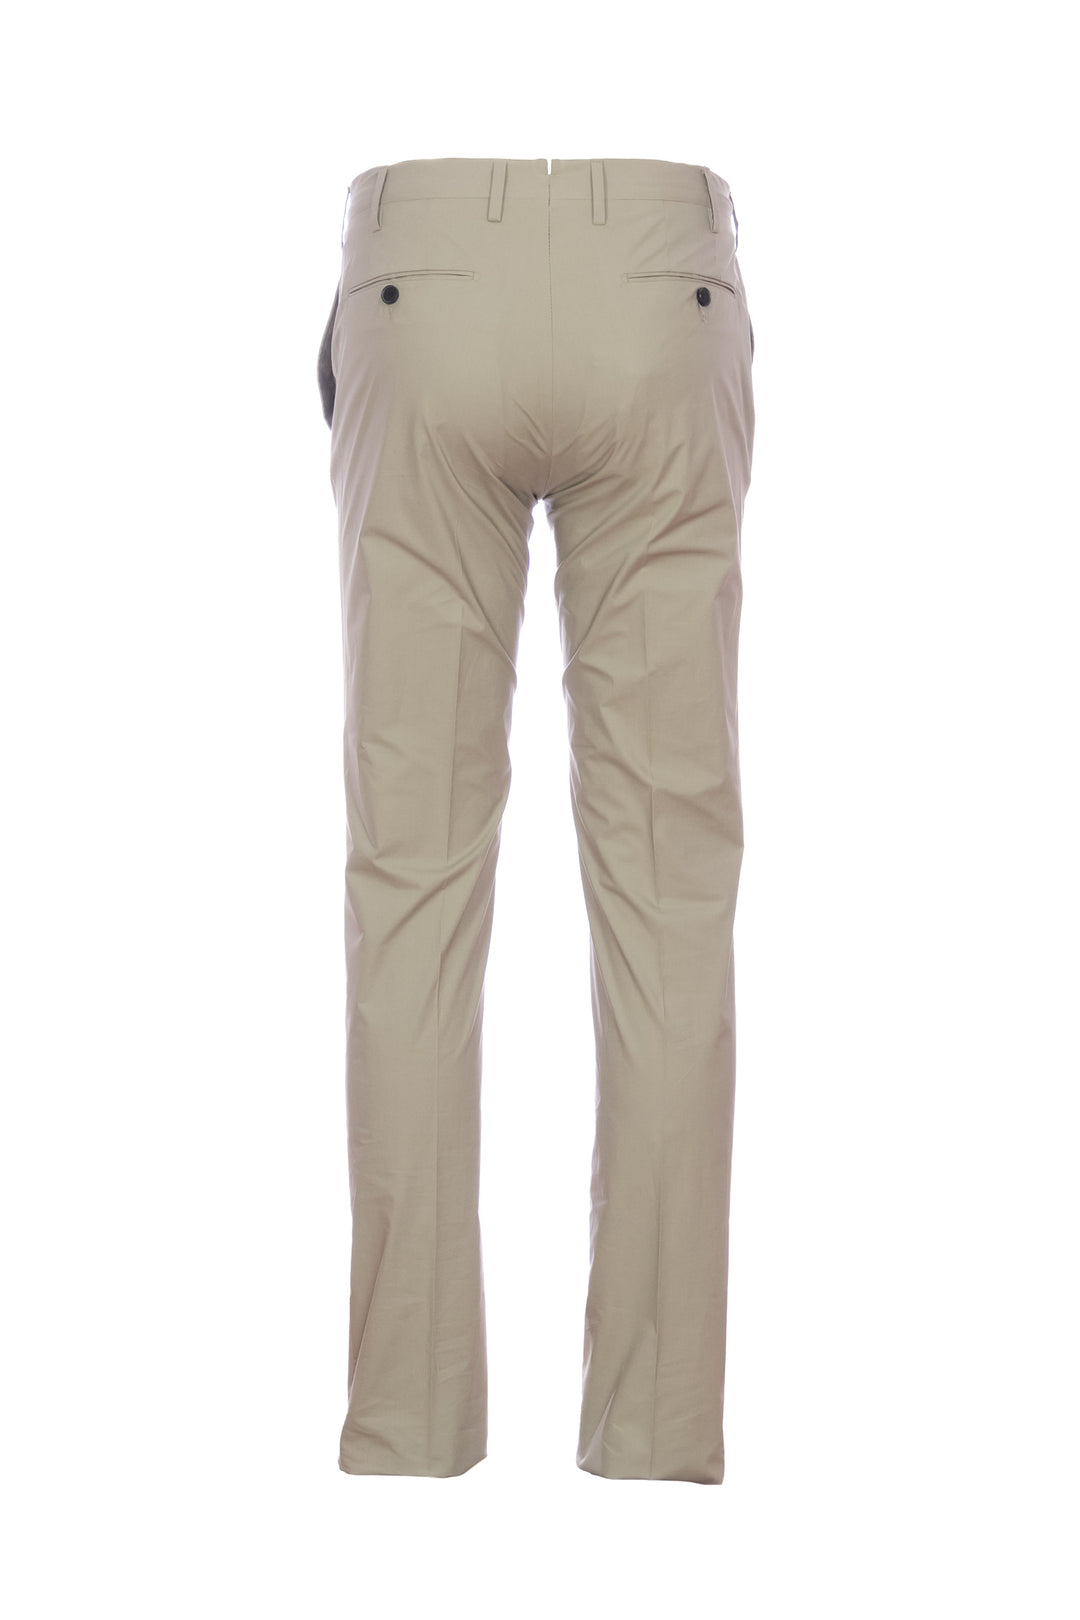 Germano Pantalone beige in popeline di cotone stretch - Mancinelli 1954